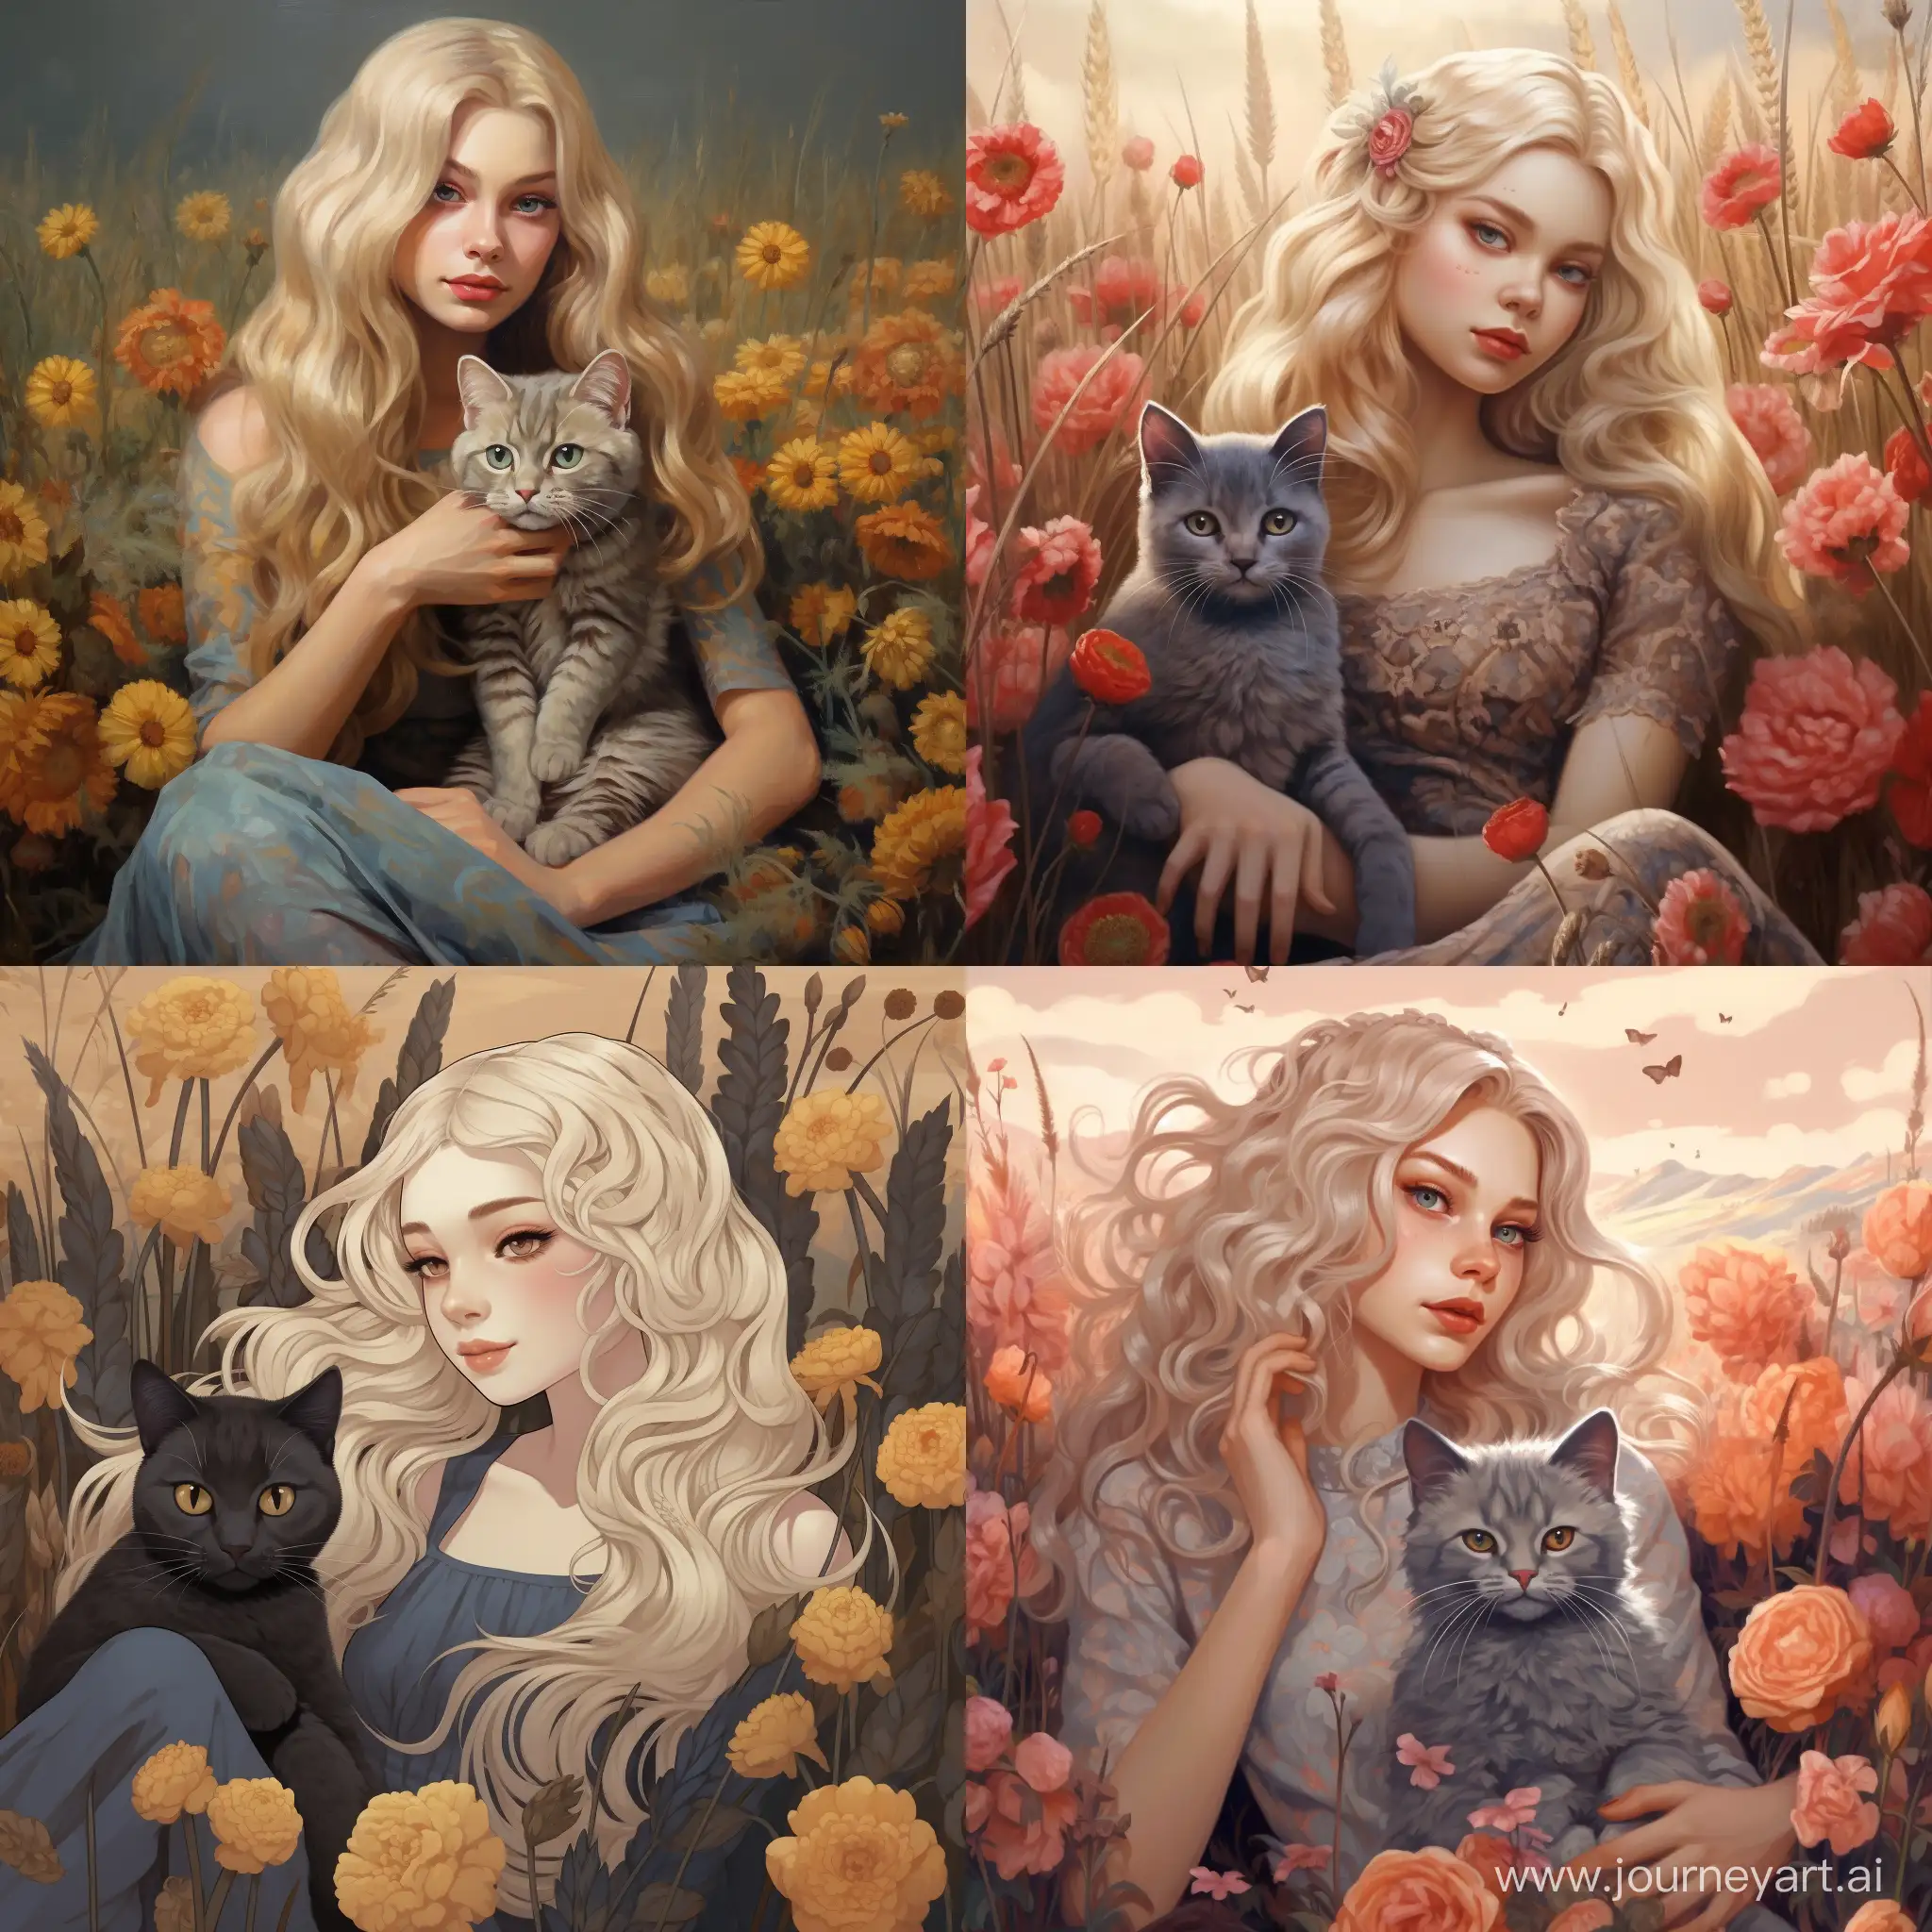 Девушка с блондинистыми волосами сидит в поле, где много цветов, на ее руках сидит серый кот 